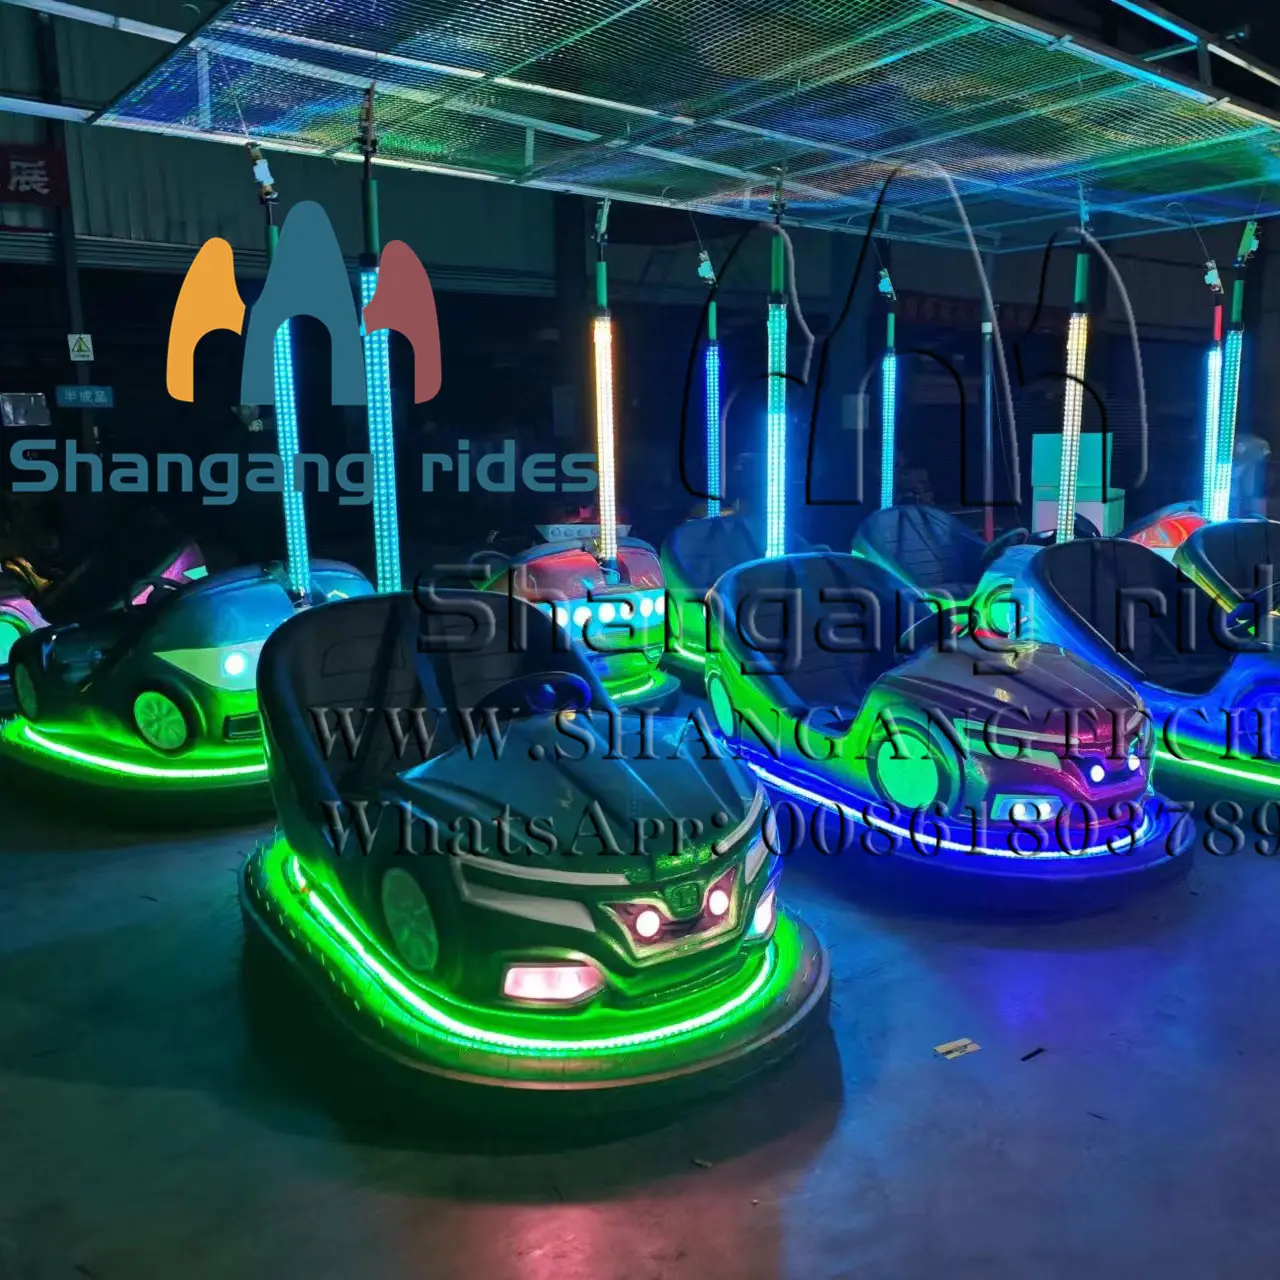 متاحة للبيع مصدات سيارات بأضواء ليد زاهية وملونة لركوب ملاهي شانغانغ الأكثر شعبية